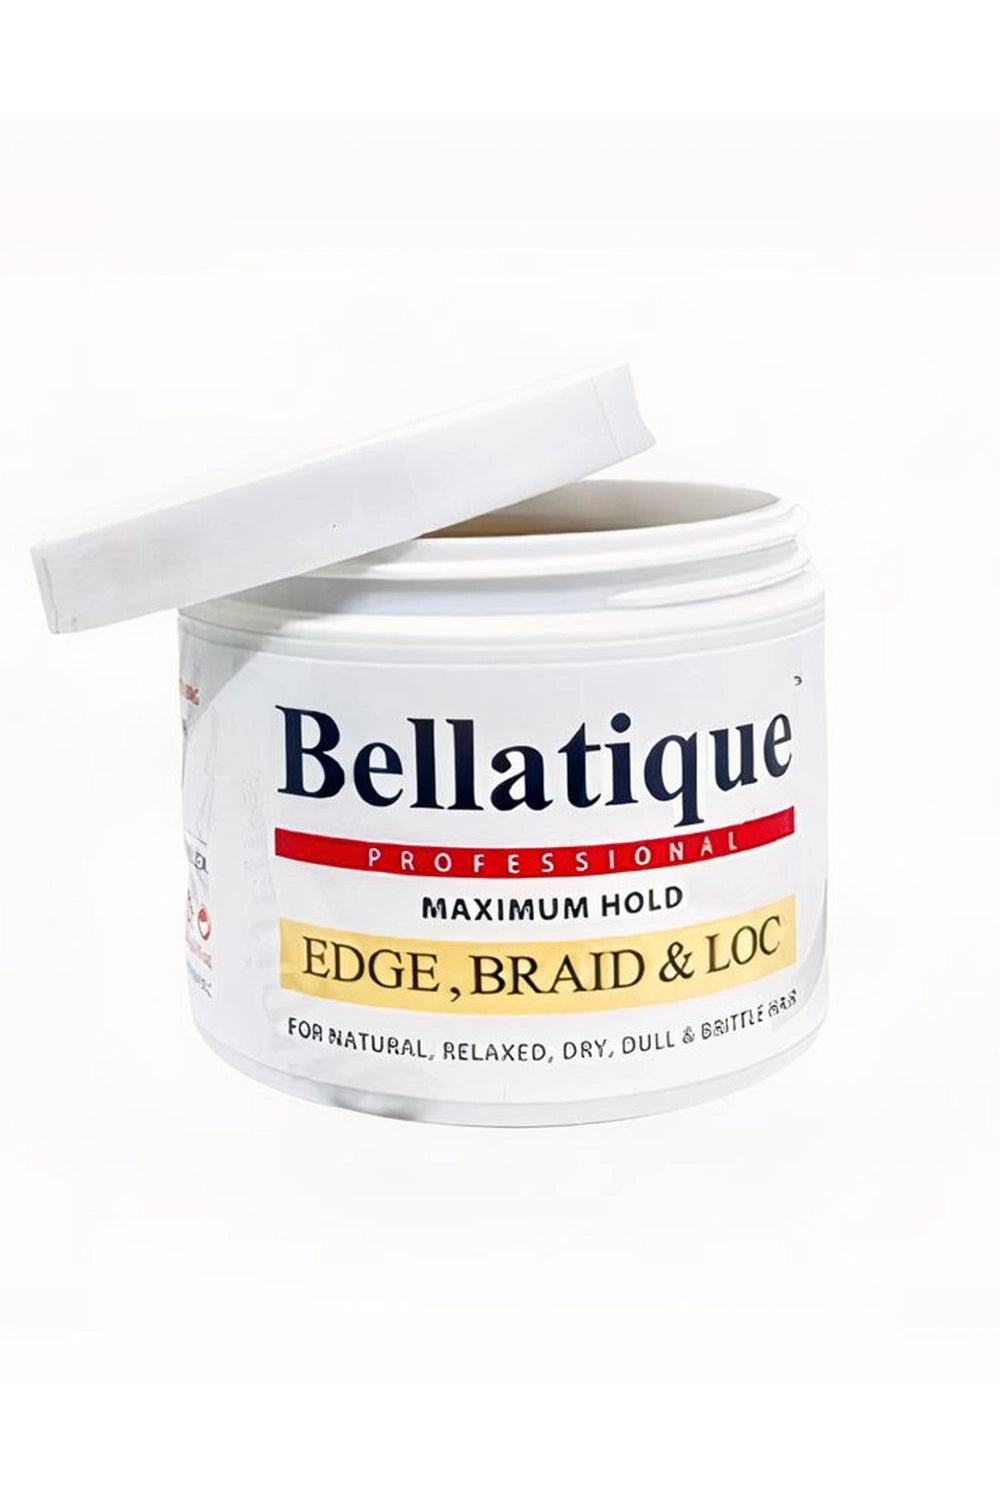 Bellatique Professional Maximum Hold Edge, Braid & LOC 4Oz